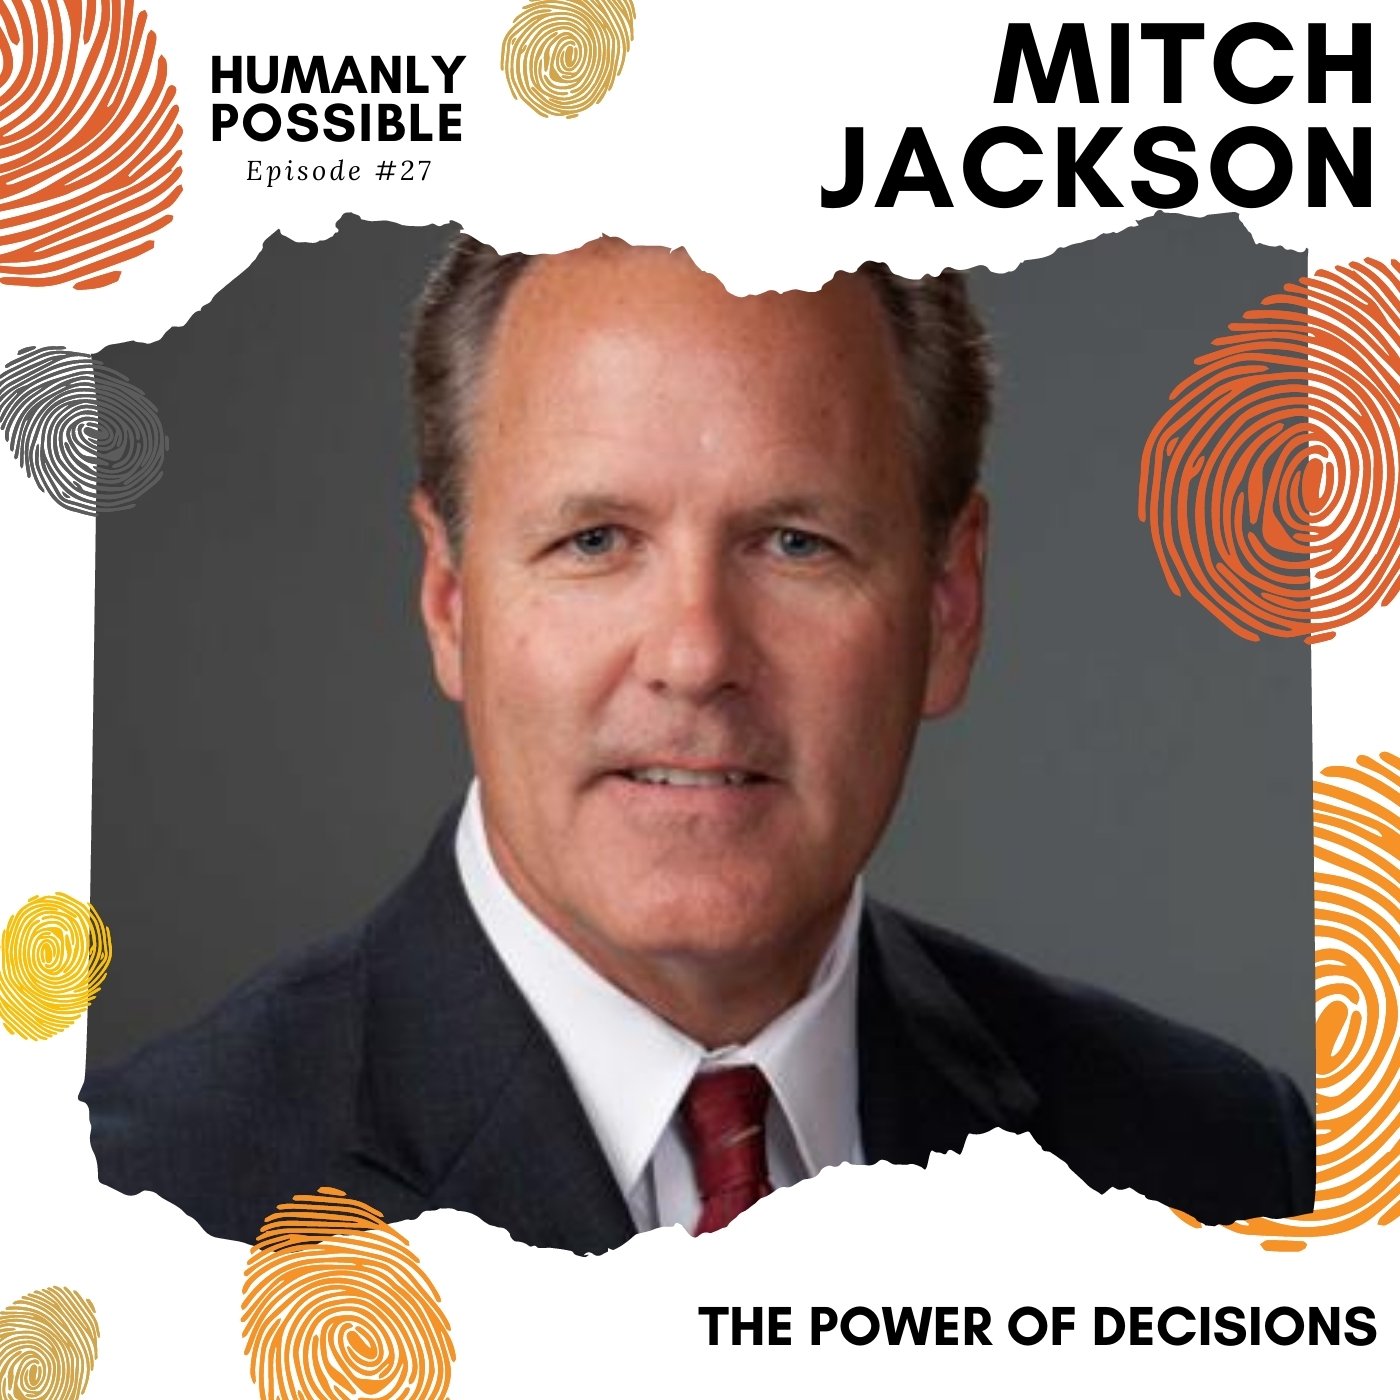 Mitch Jackson